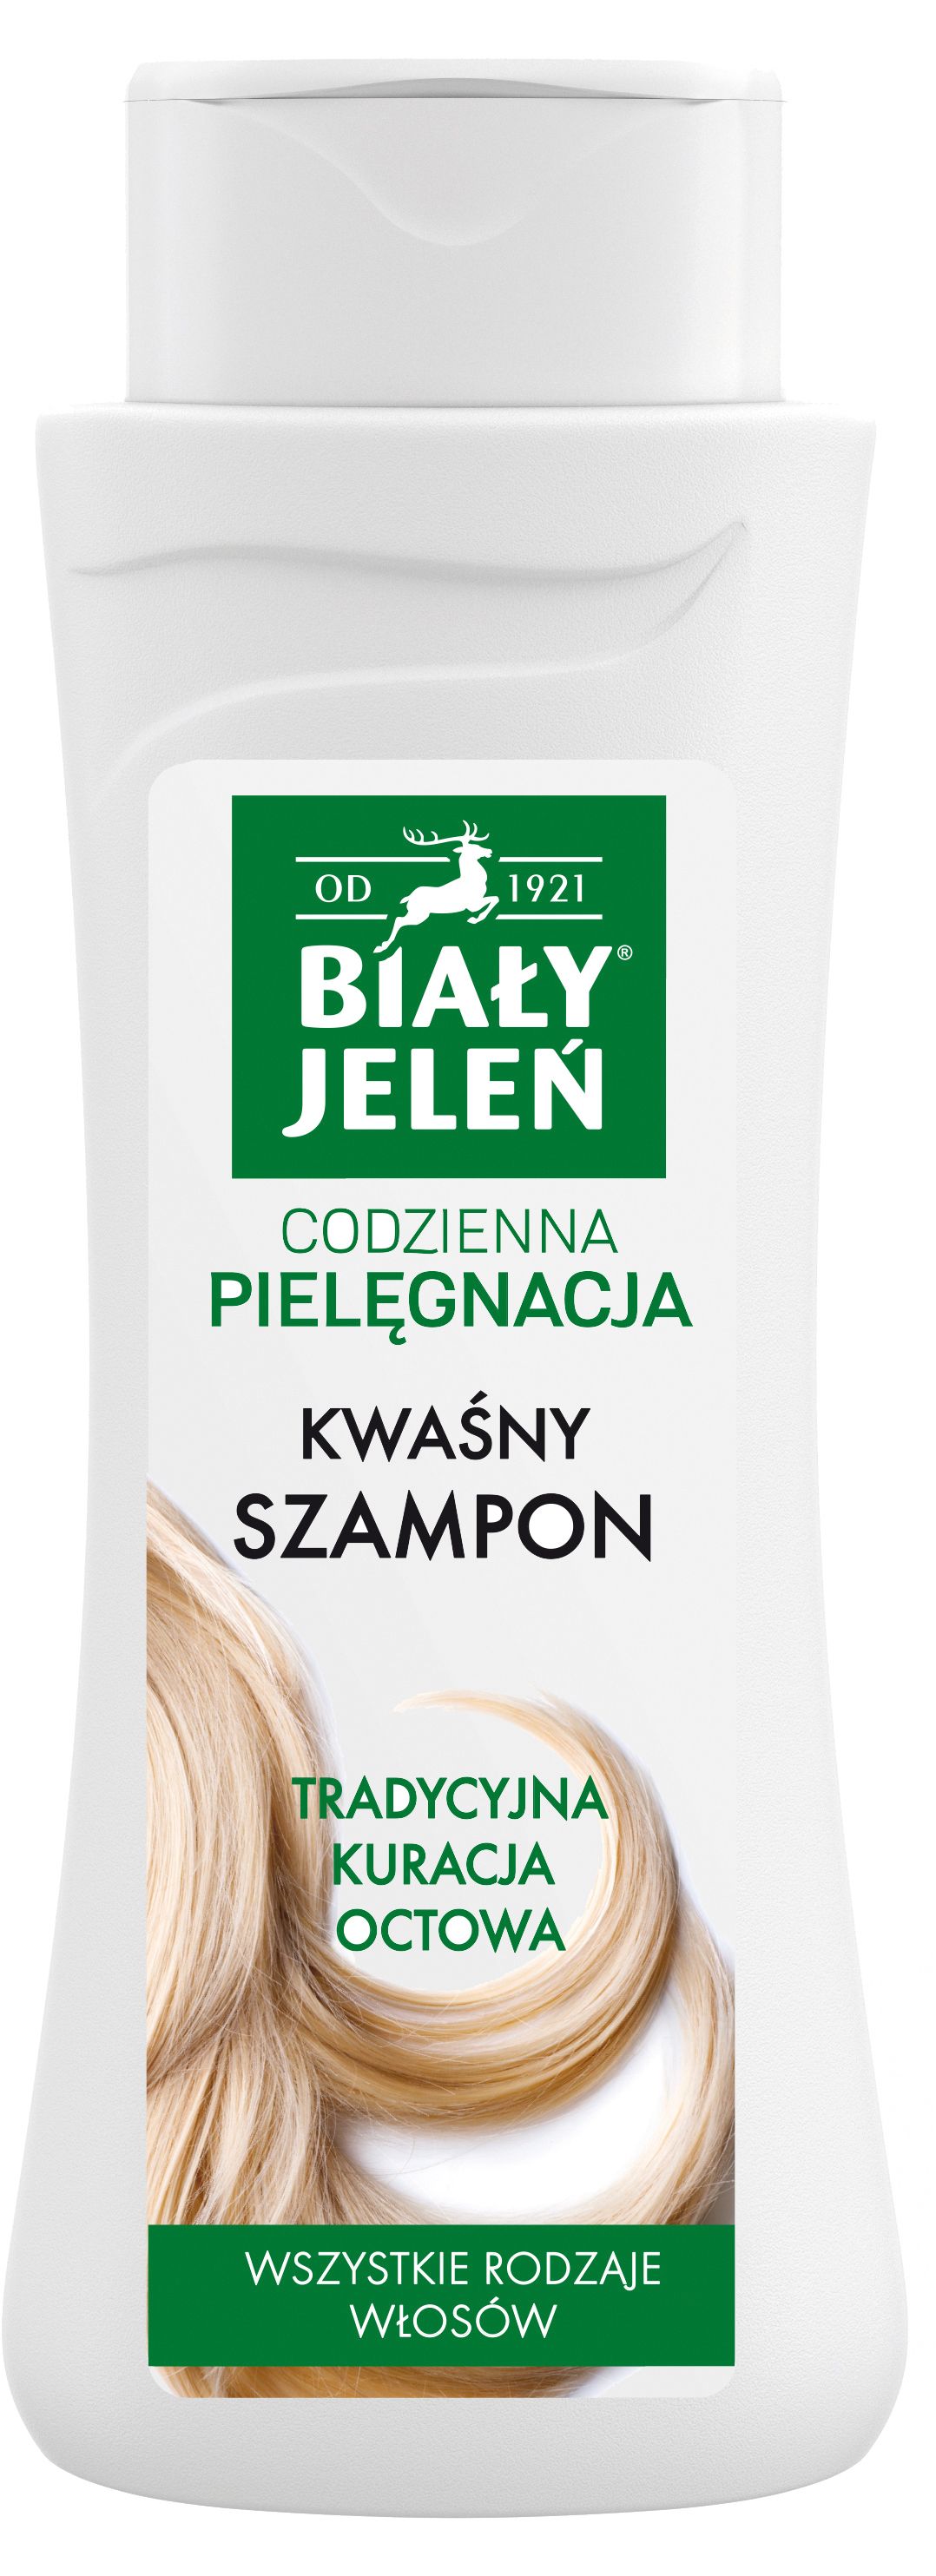 biały jeleń szampon gdzie kupić